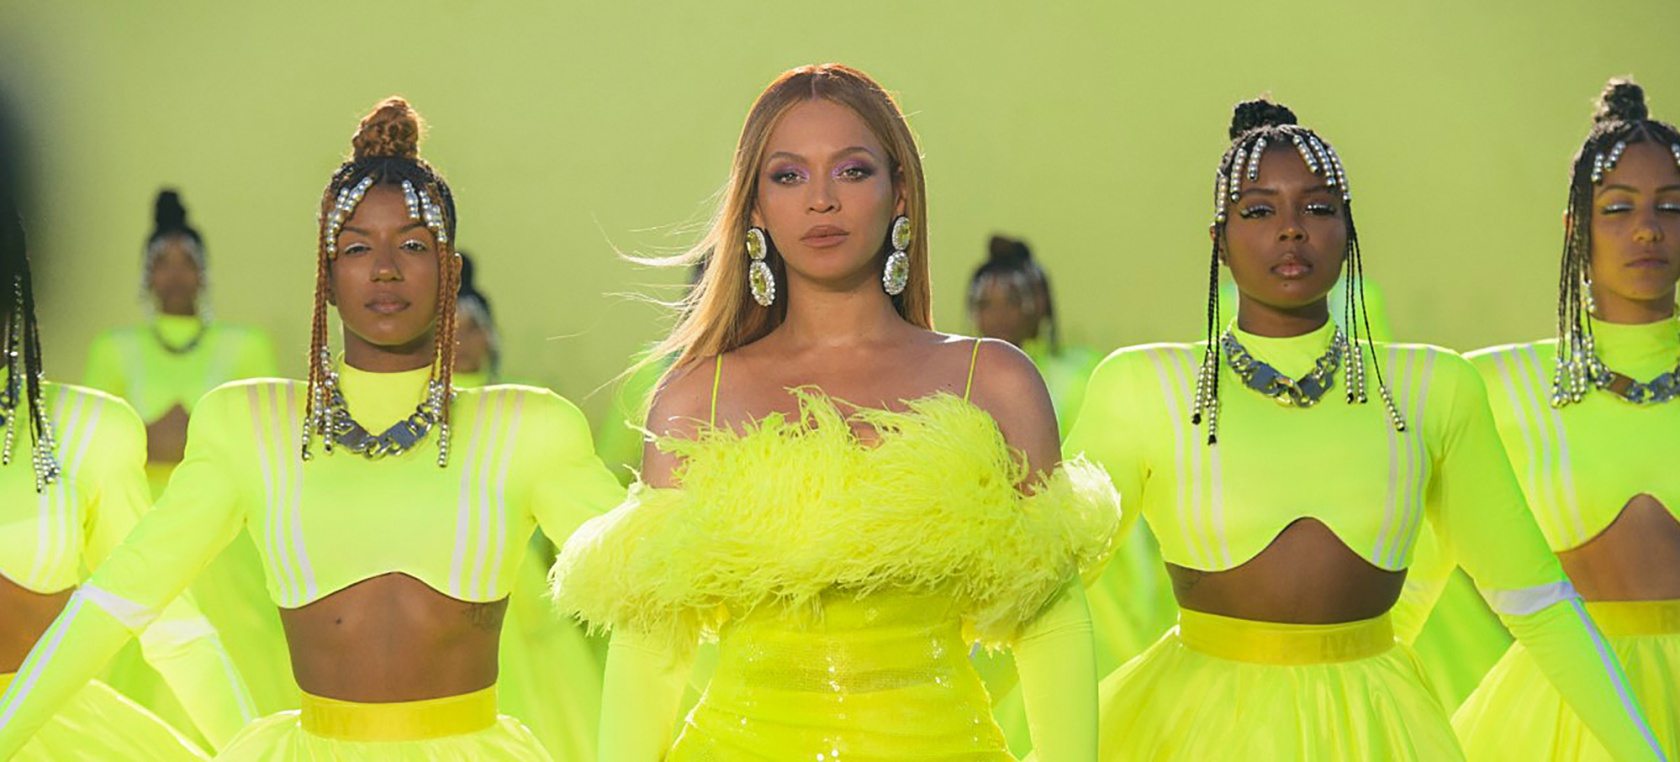 El impresionante vestido transparente de Beyoncé deja boquiabiertos a sus fans